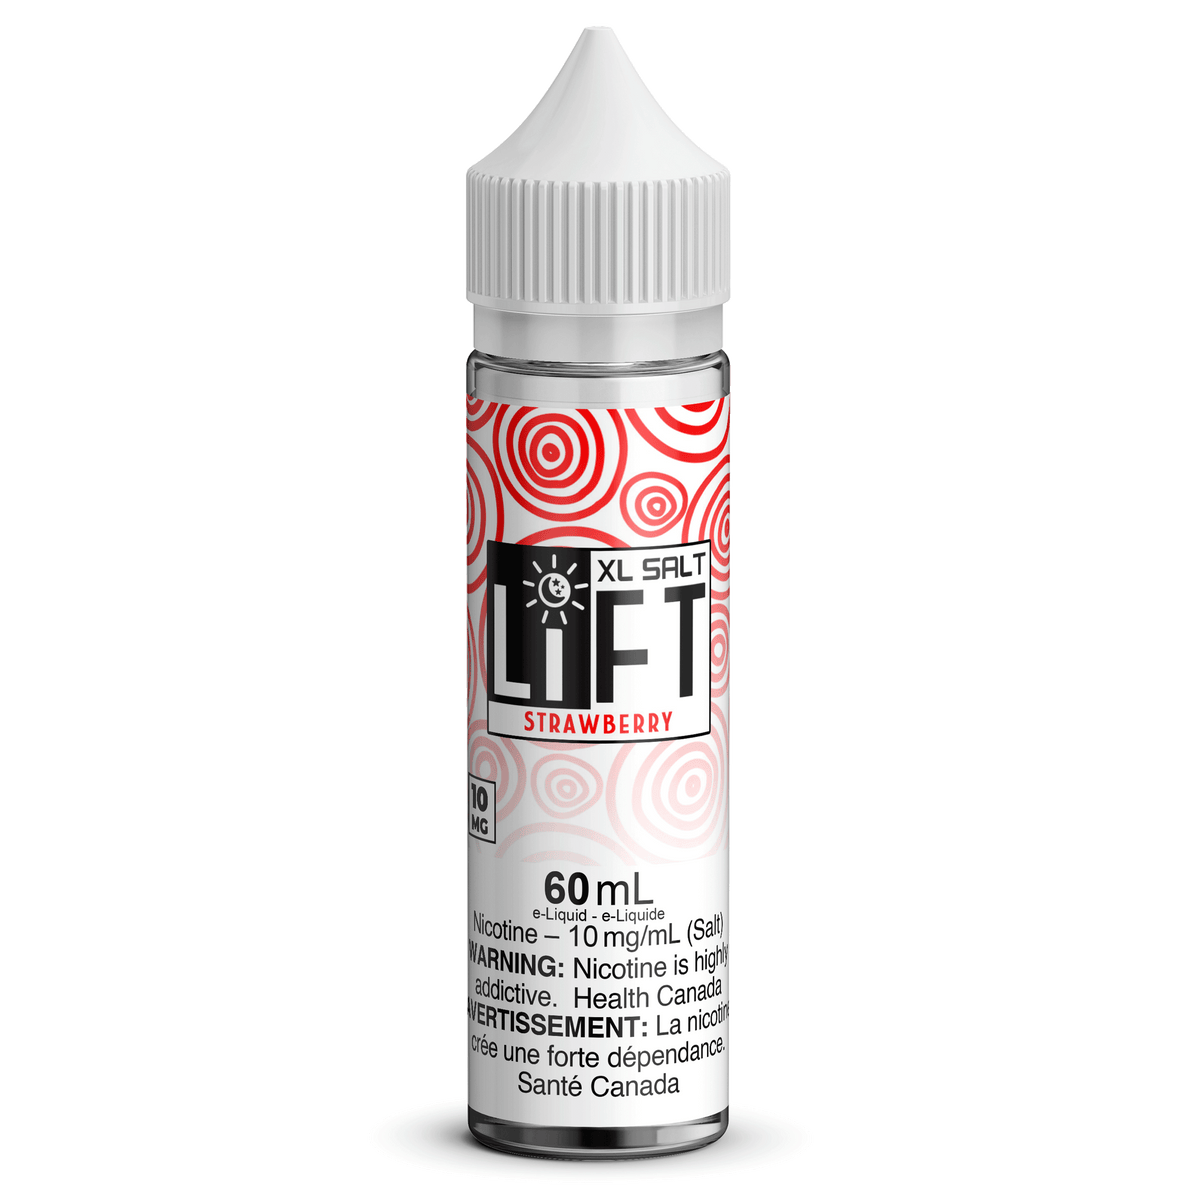 LIFT XL SALT - Strawberry available on Canada online vape shop